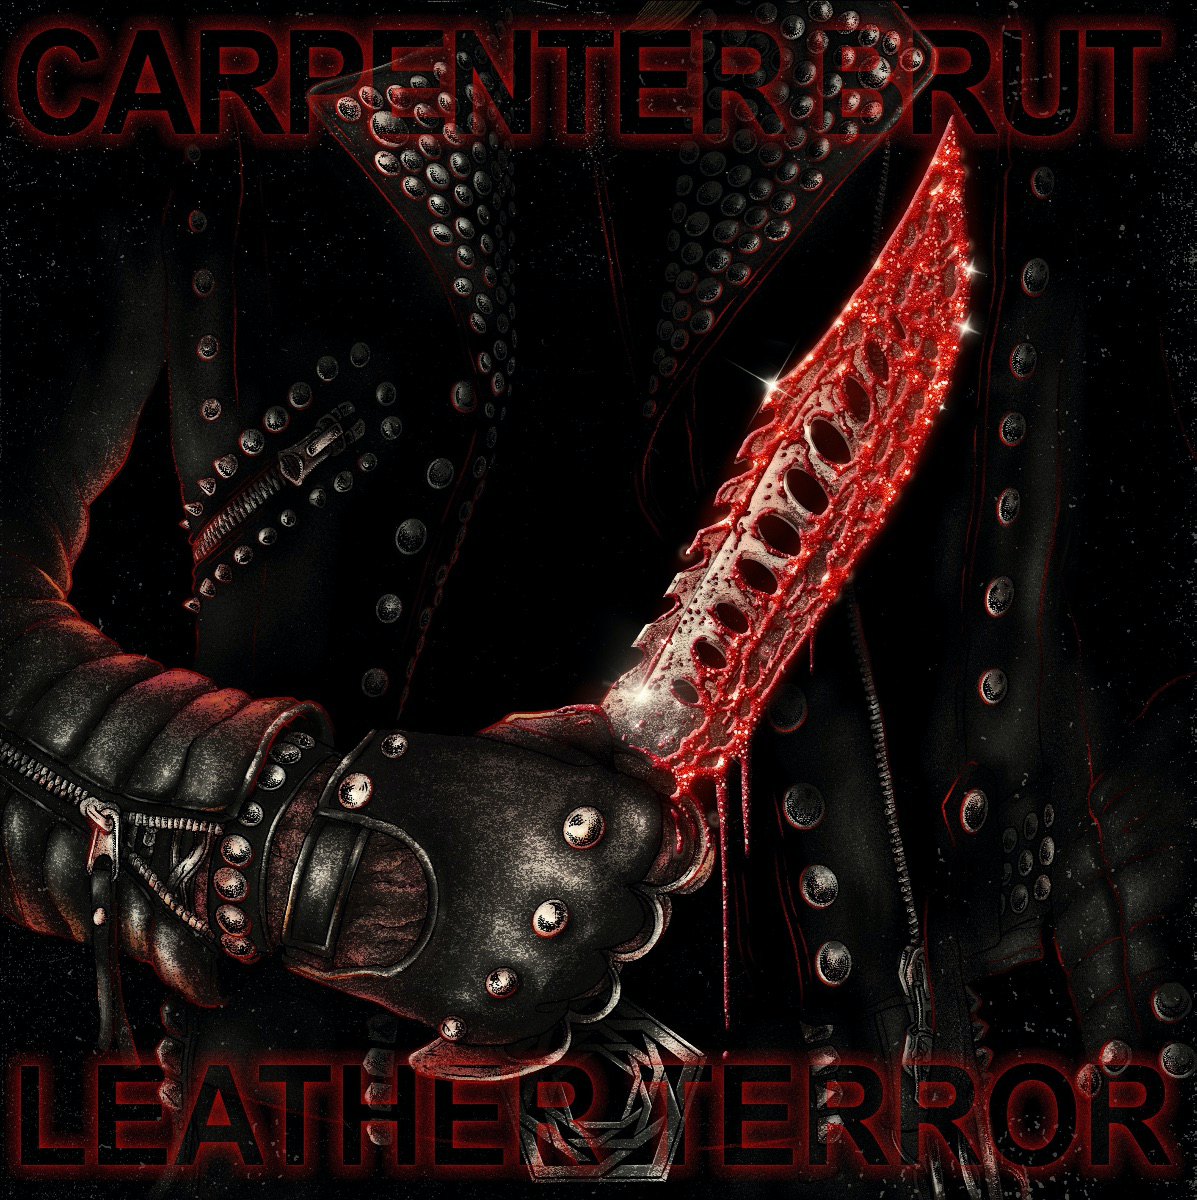 carpenter-brut-leather-terror-album-cover